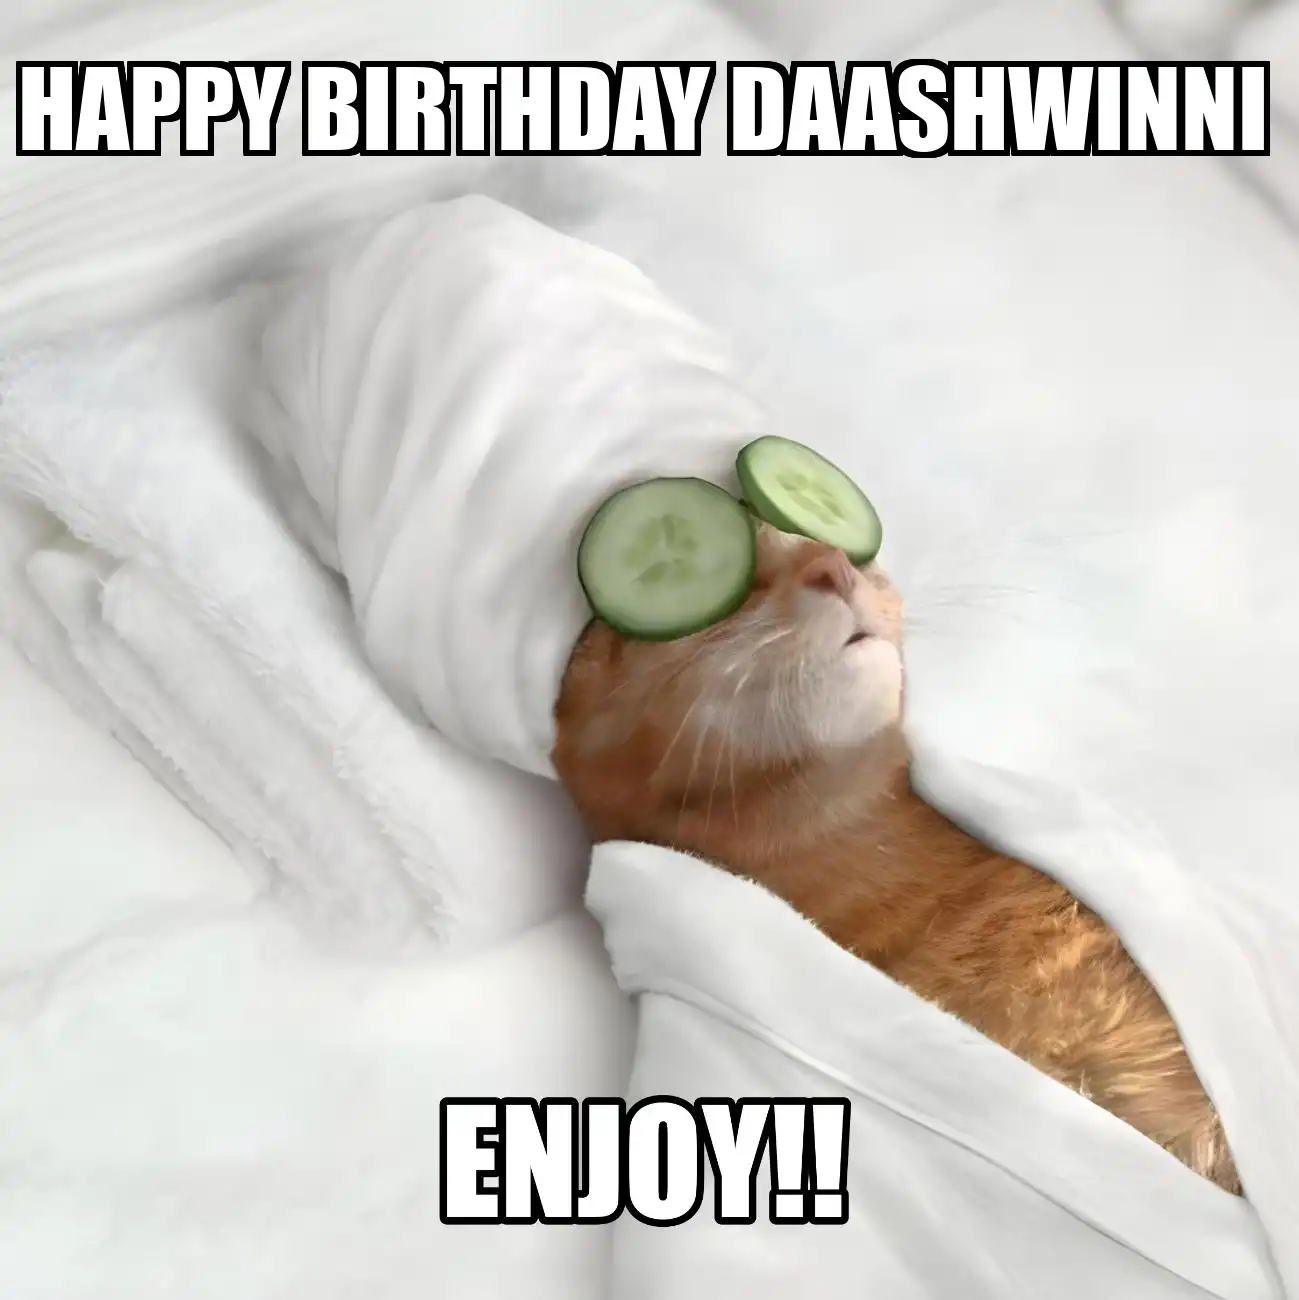 Happy Birthday Daashwinni Enjoy Cat Meme